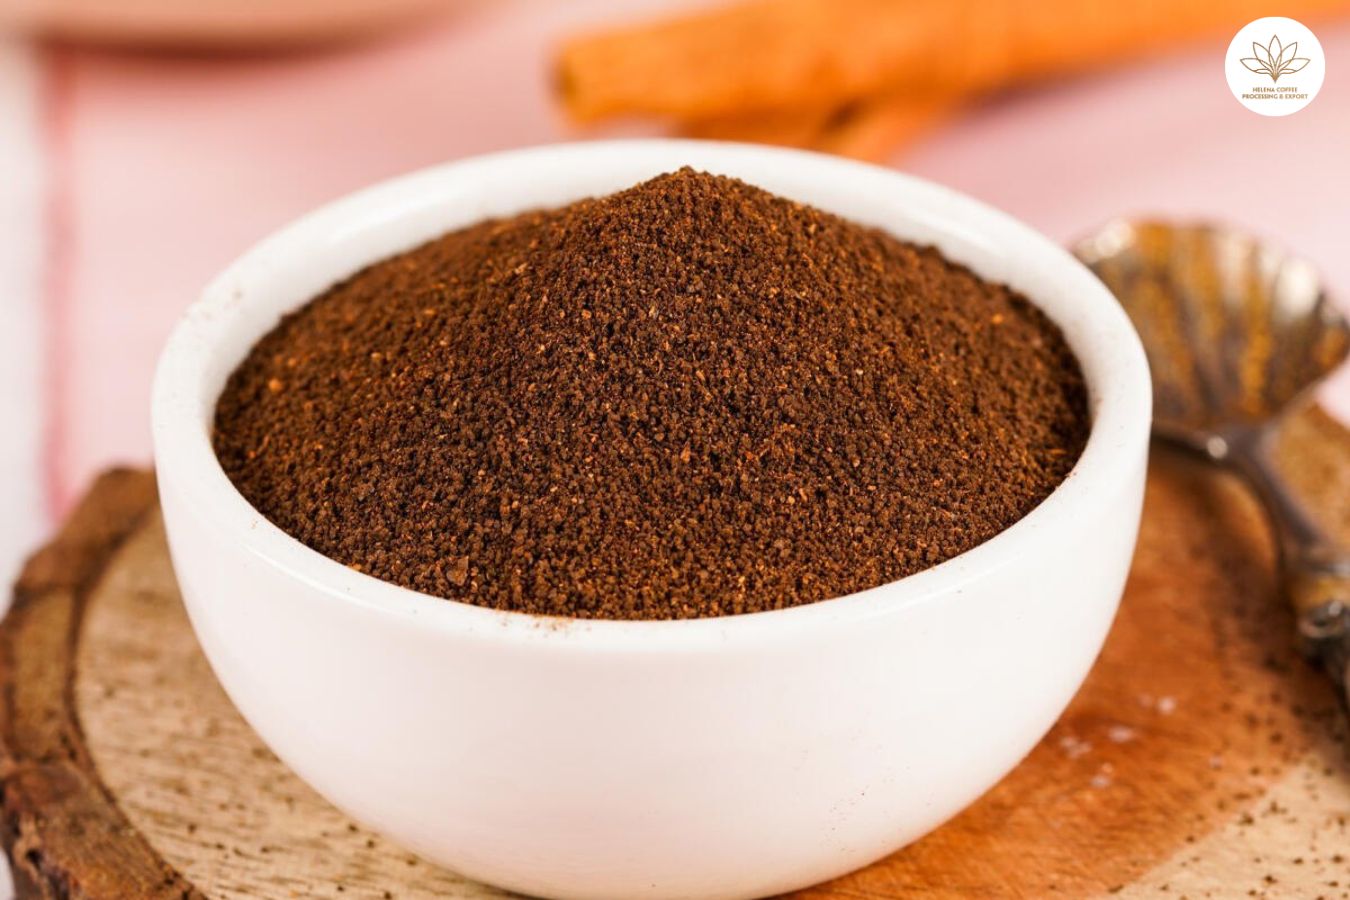 Robusta spray-dried instant coffee powder